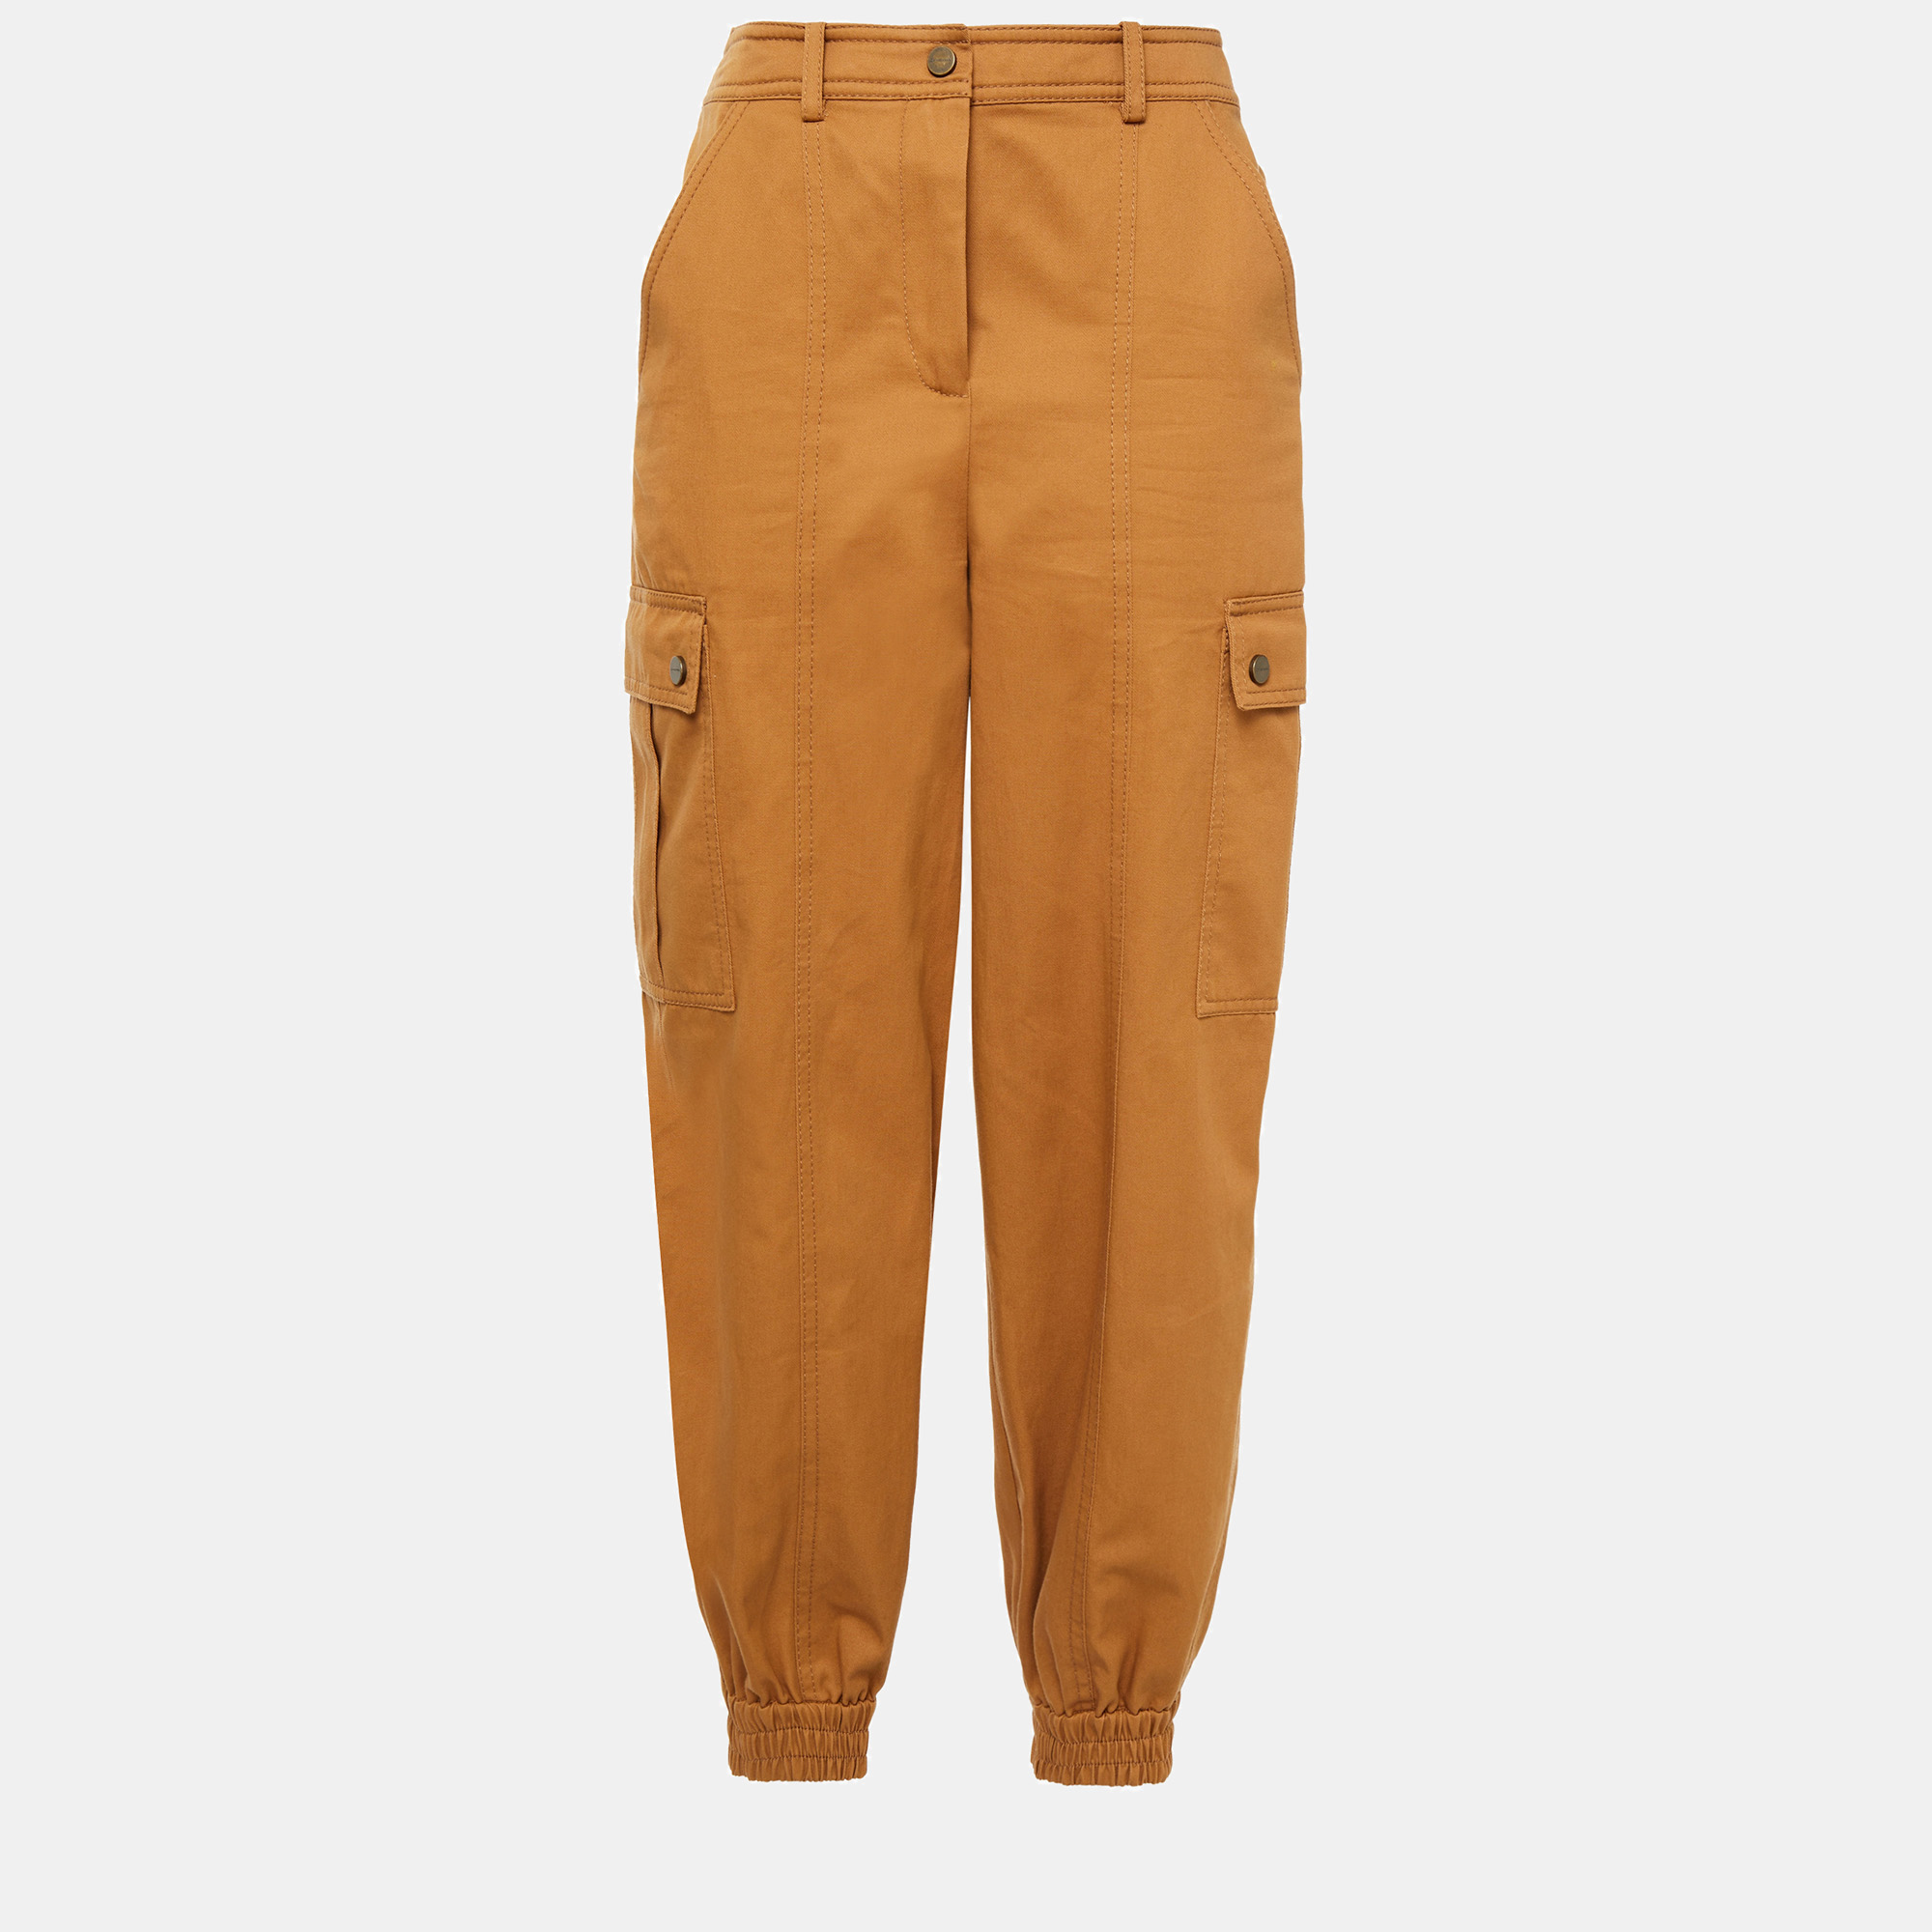 Zimmermann brown cotton utility pants size m (2)